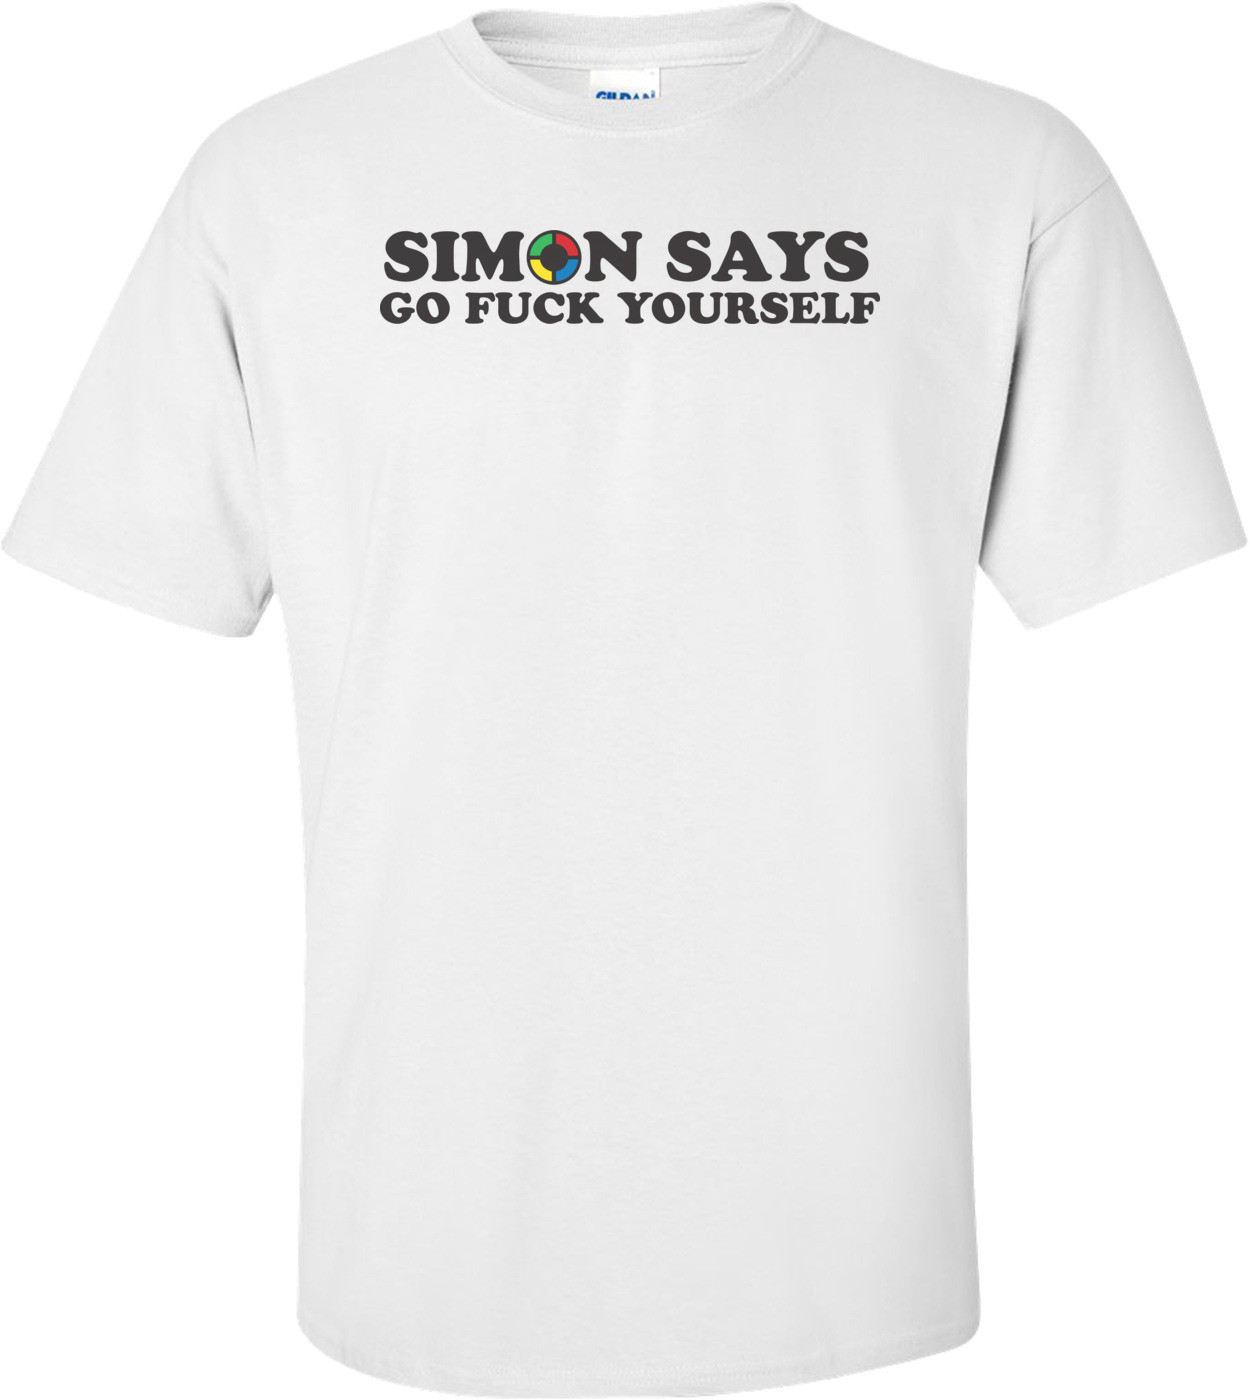 Simon Says Go Fuck Yourself T-shirt